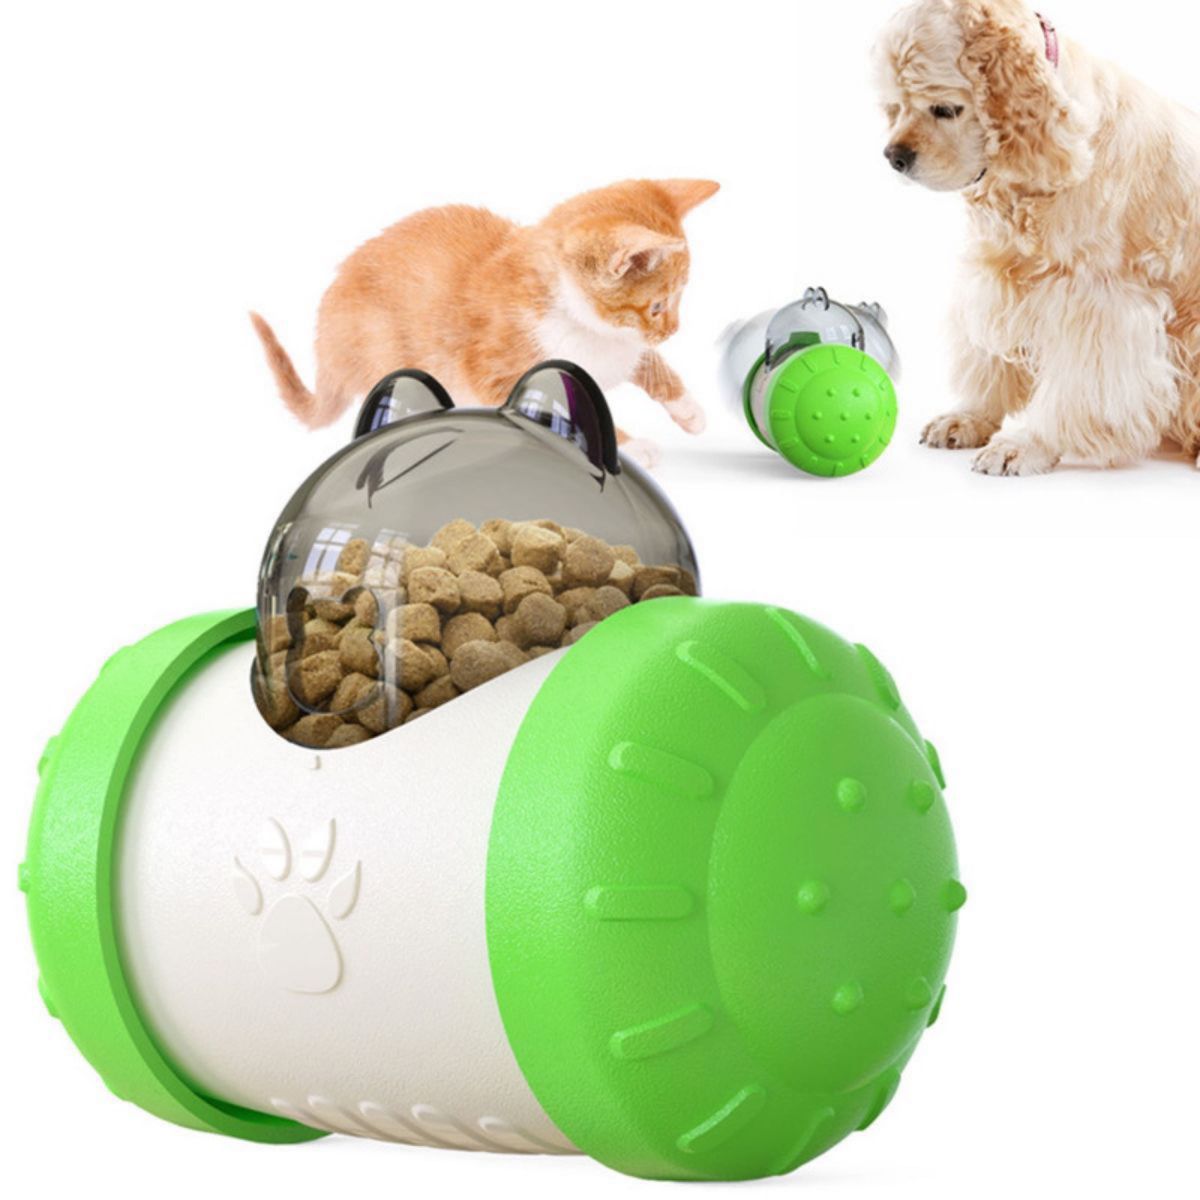 【グリーン】ペット おもちゃ おやつローラー 給餌玩具 知育玩具 早食い防止 運動不足解消 犬 猫 回転